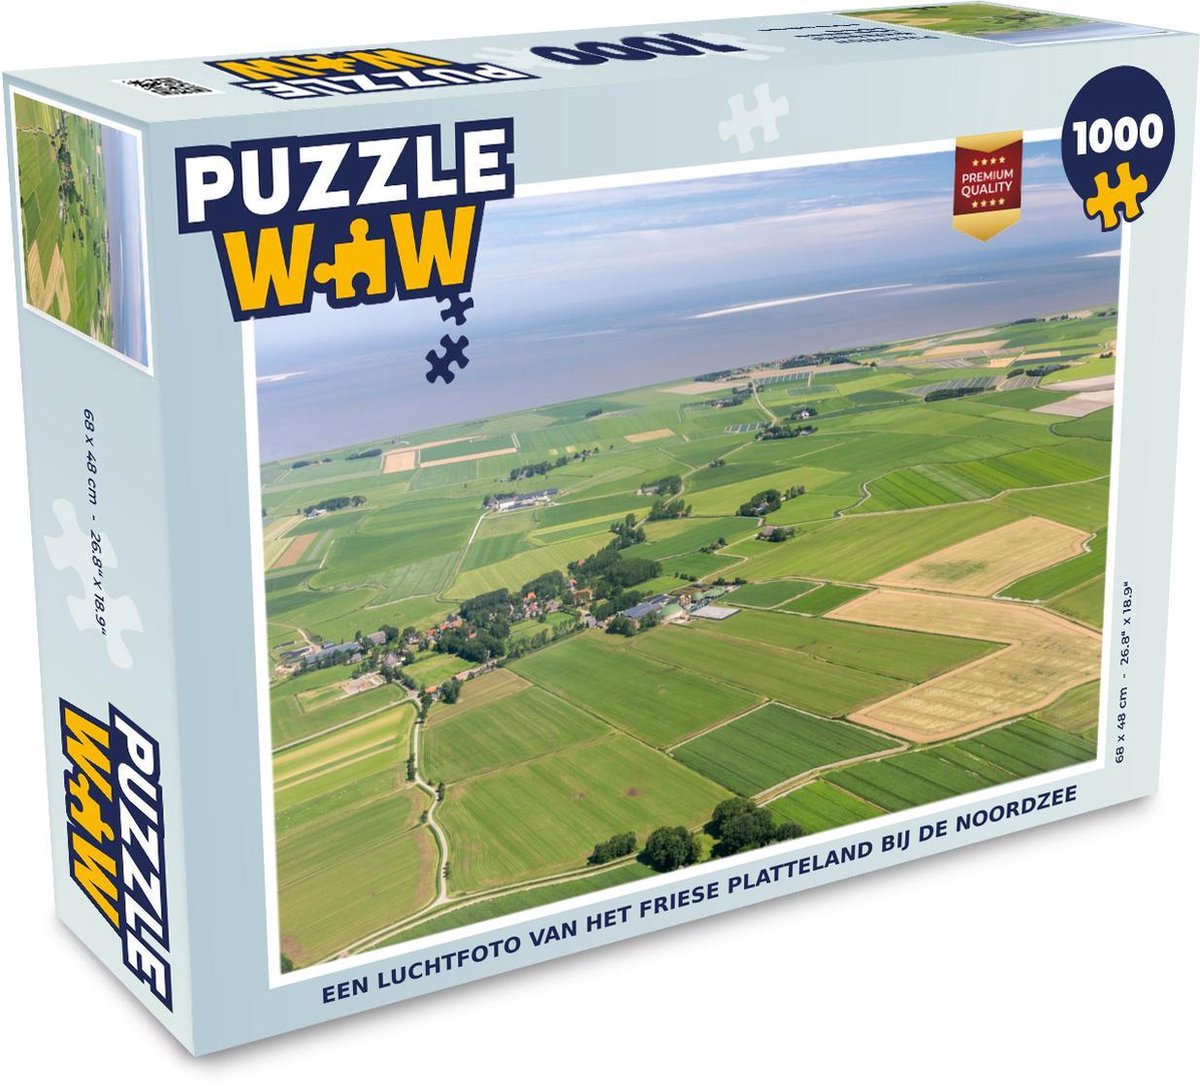 Afbeelding van product Puzzel 1000 stukjes volwassenen Platteland 1000 stukjes - Een luchtfoto van het Friese platteland bij de Noordzee - PuzzleWow heeft +100000 puzzels